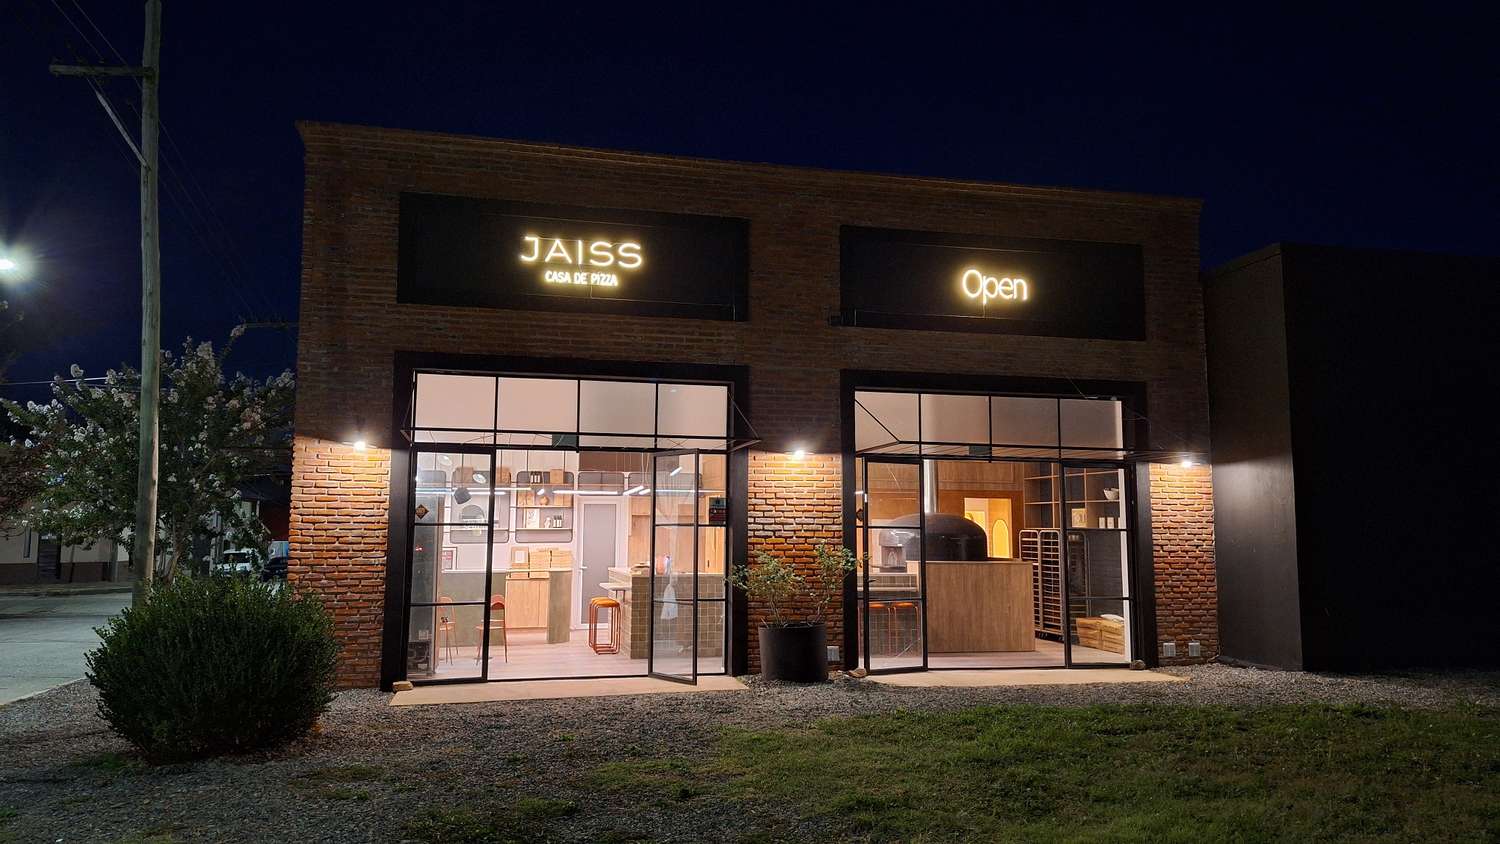 Jais Pizza cuenta con un bellísimo local ubicado en Juncal 595, a pocos metros de Avellaneda y en pleno camino hacia el Lago del Fuerte.